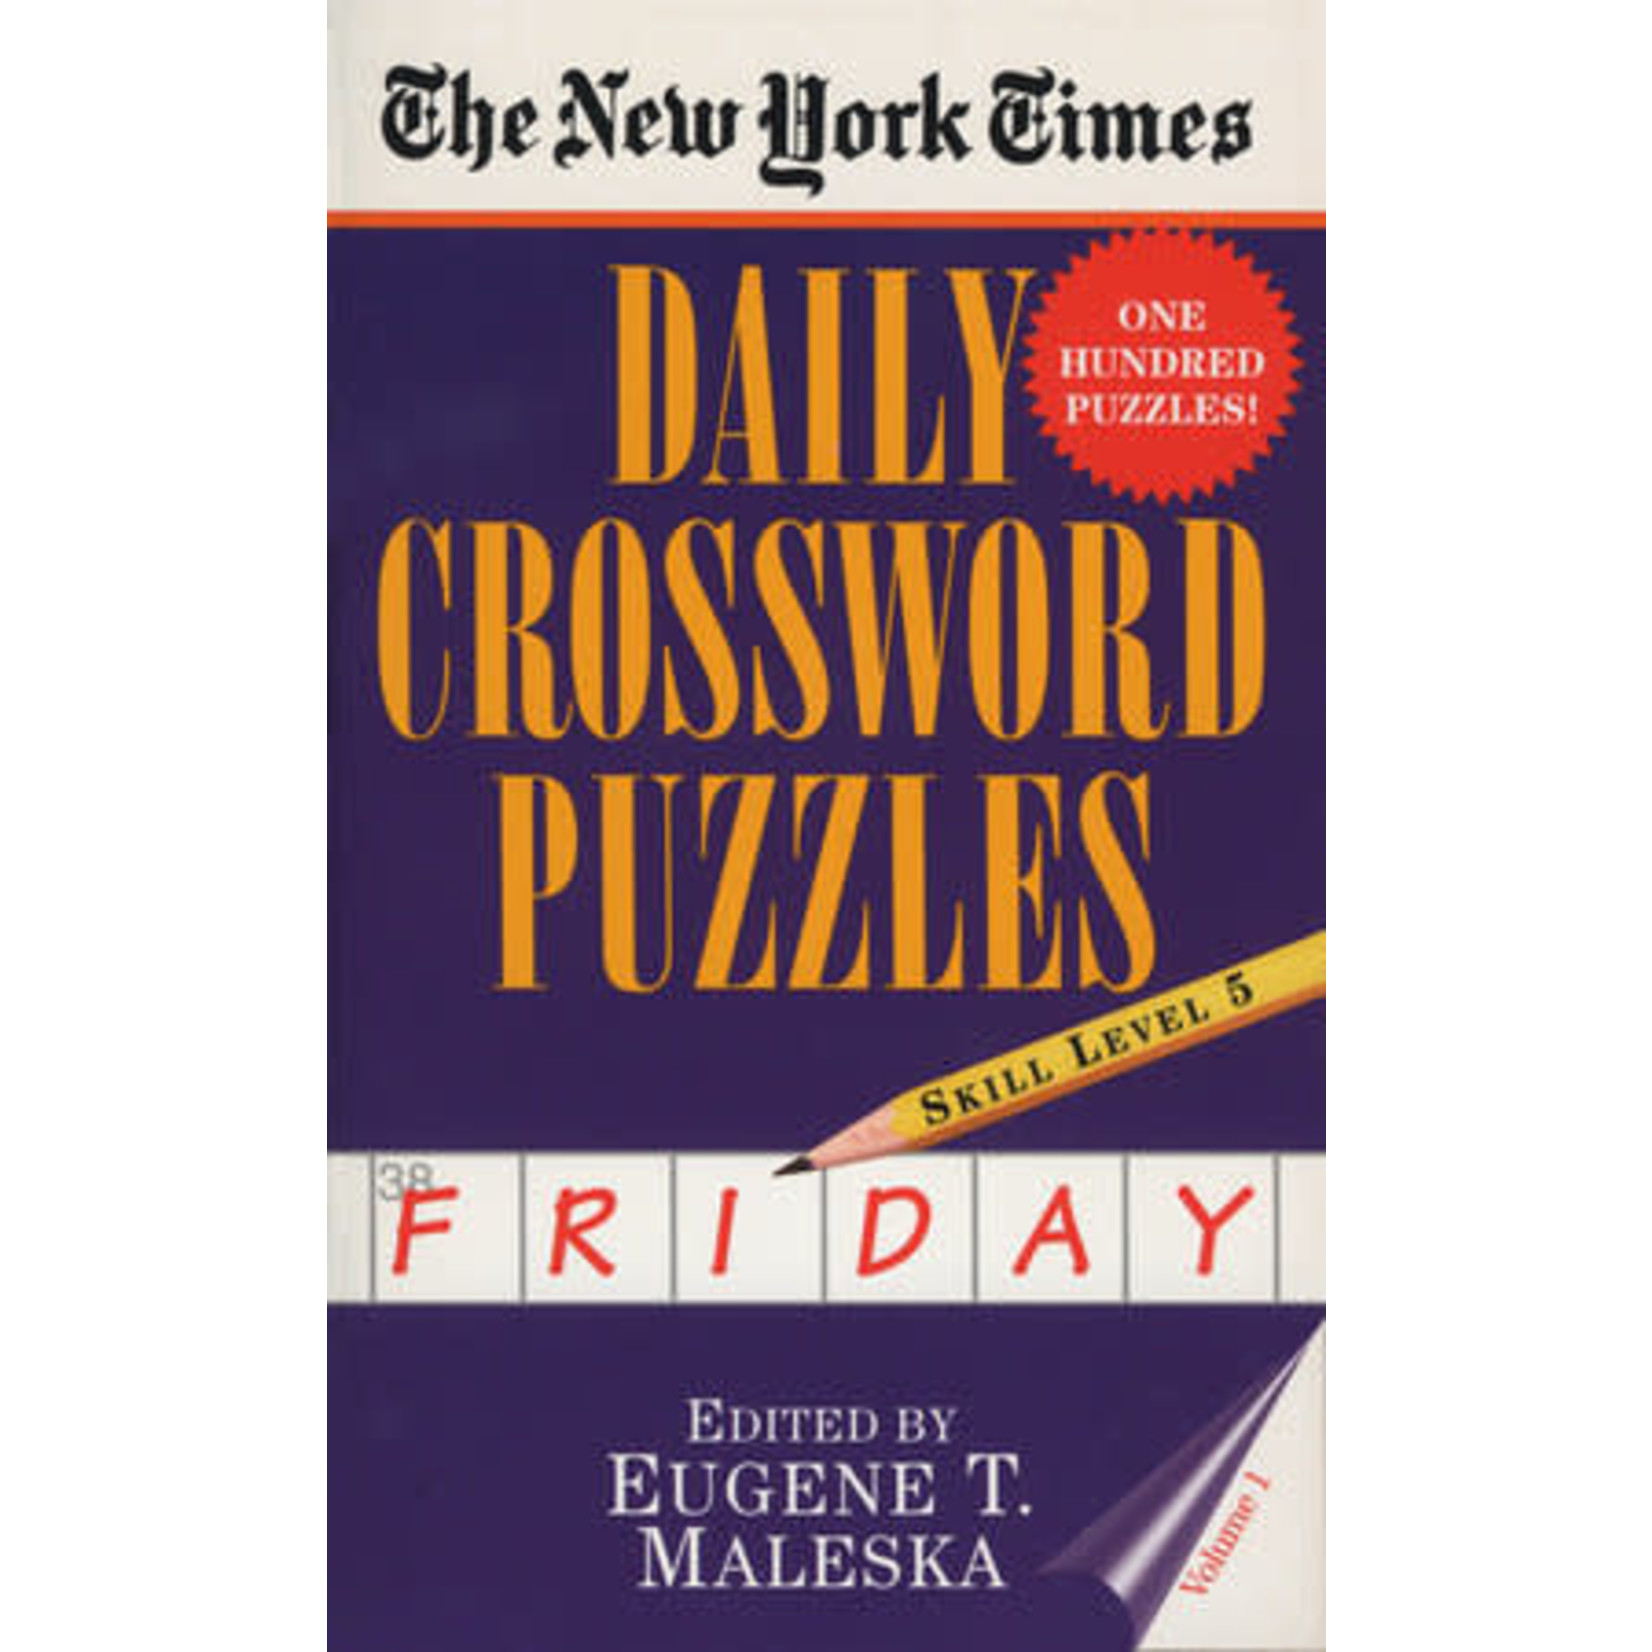 Penguin Random House New York Times: Daily Crosswords (Friday)